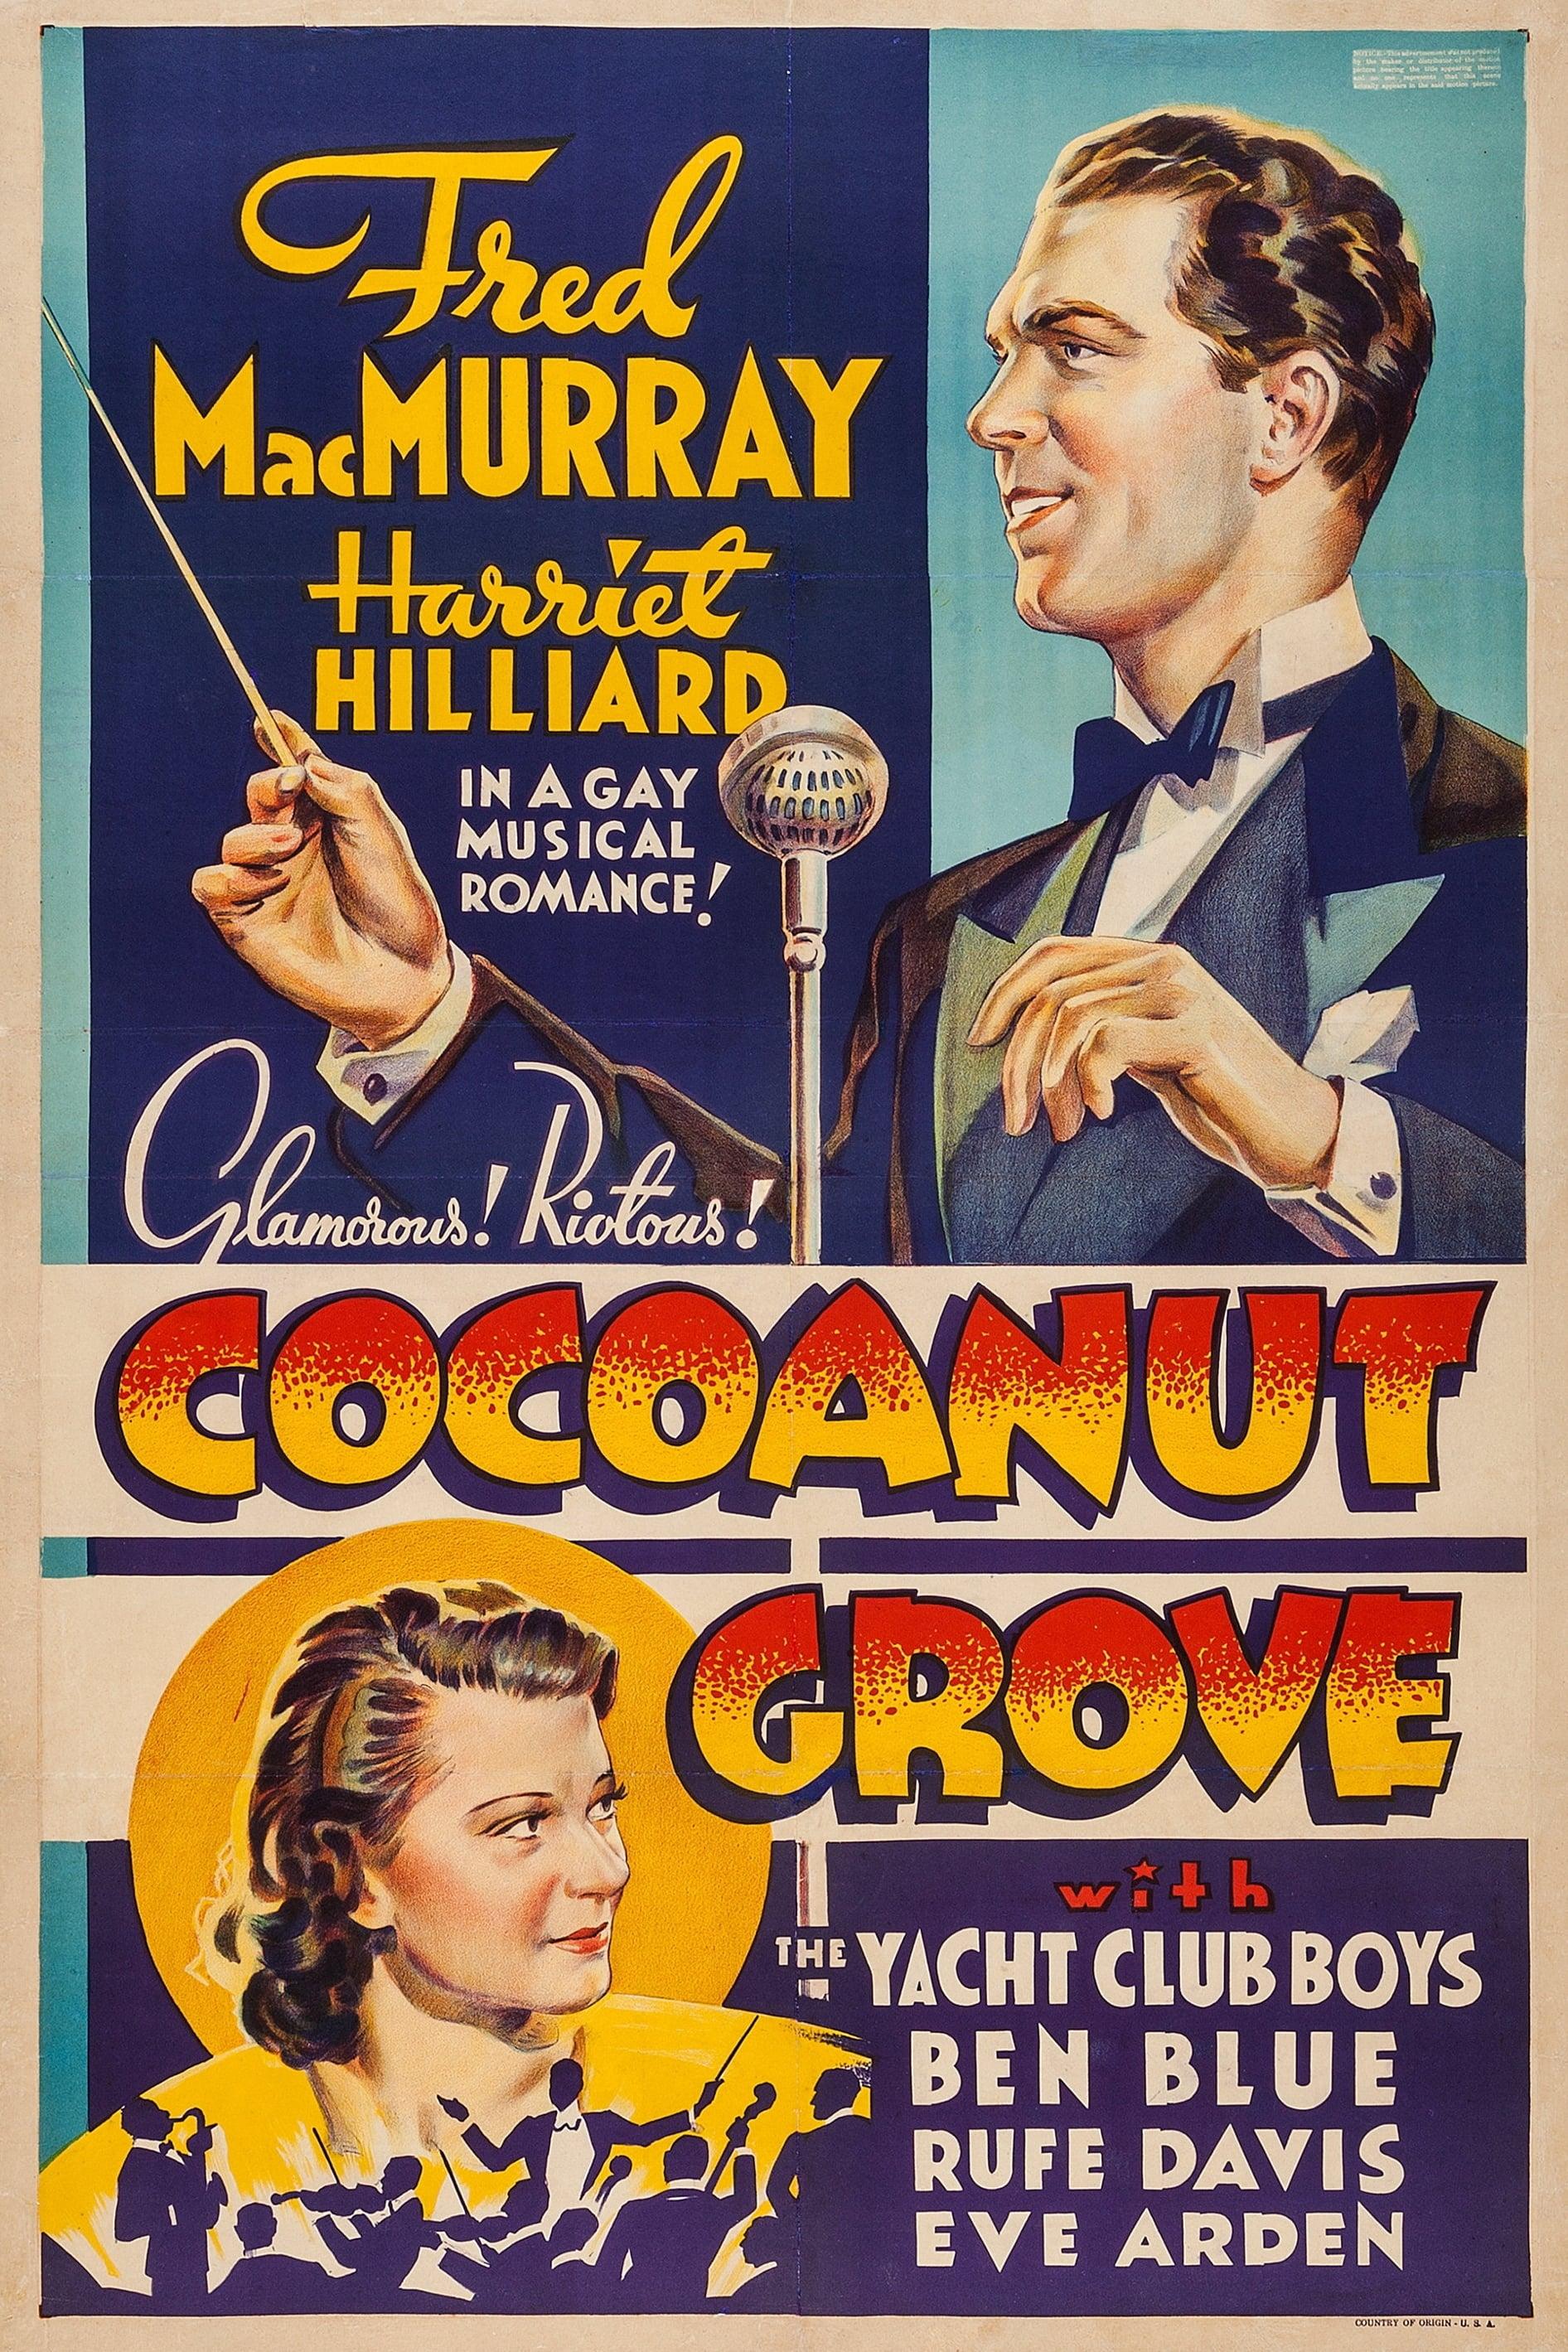 Cocoanut Grove poster